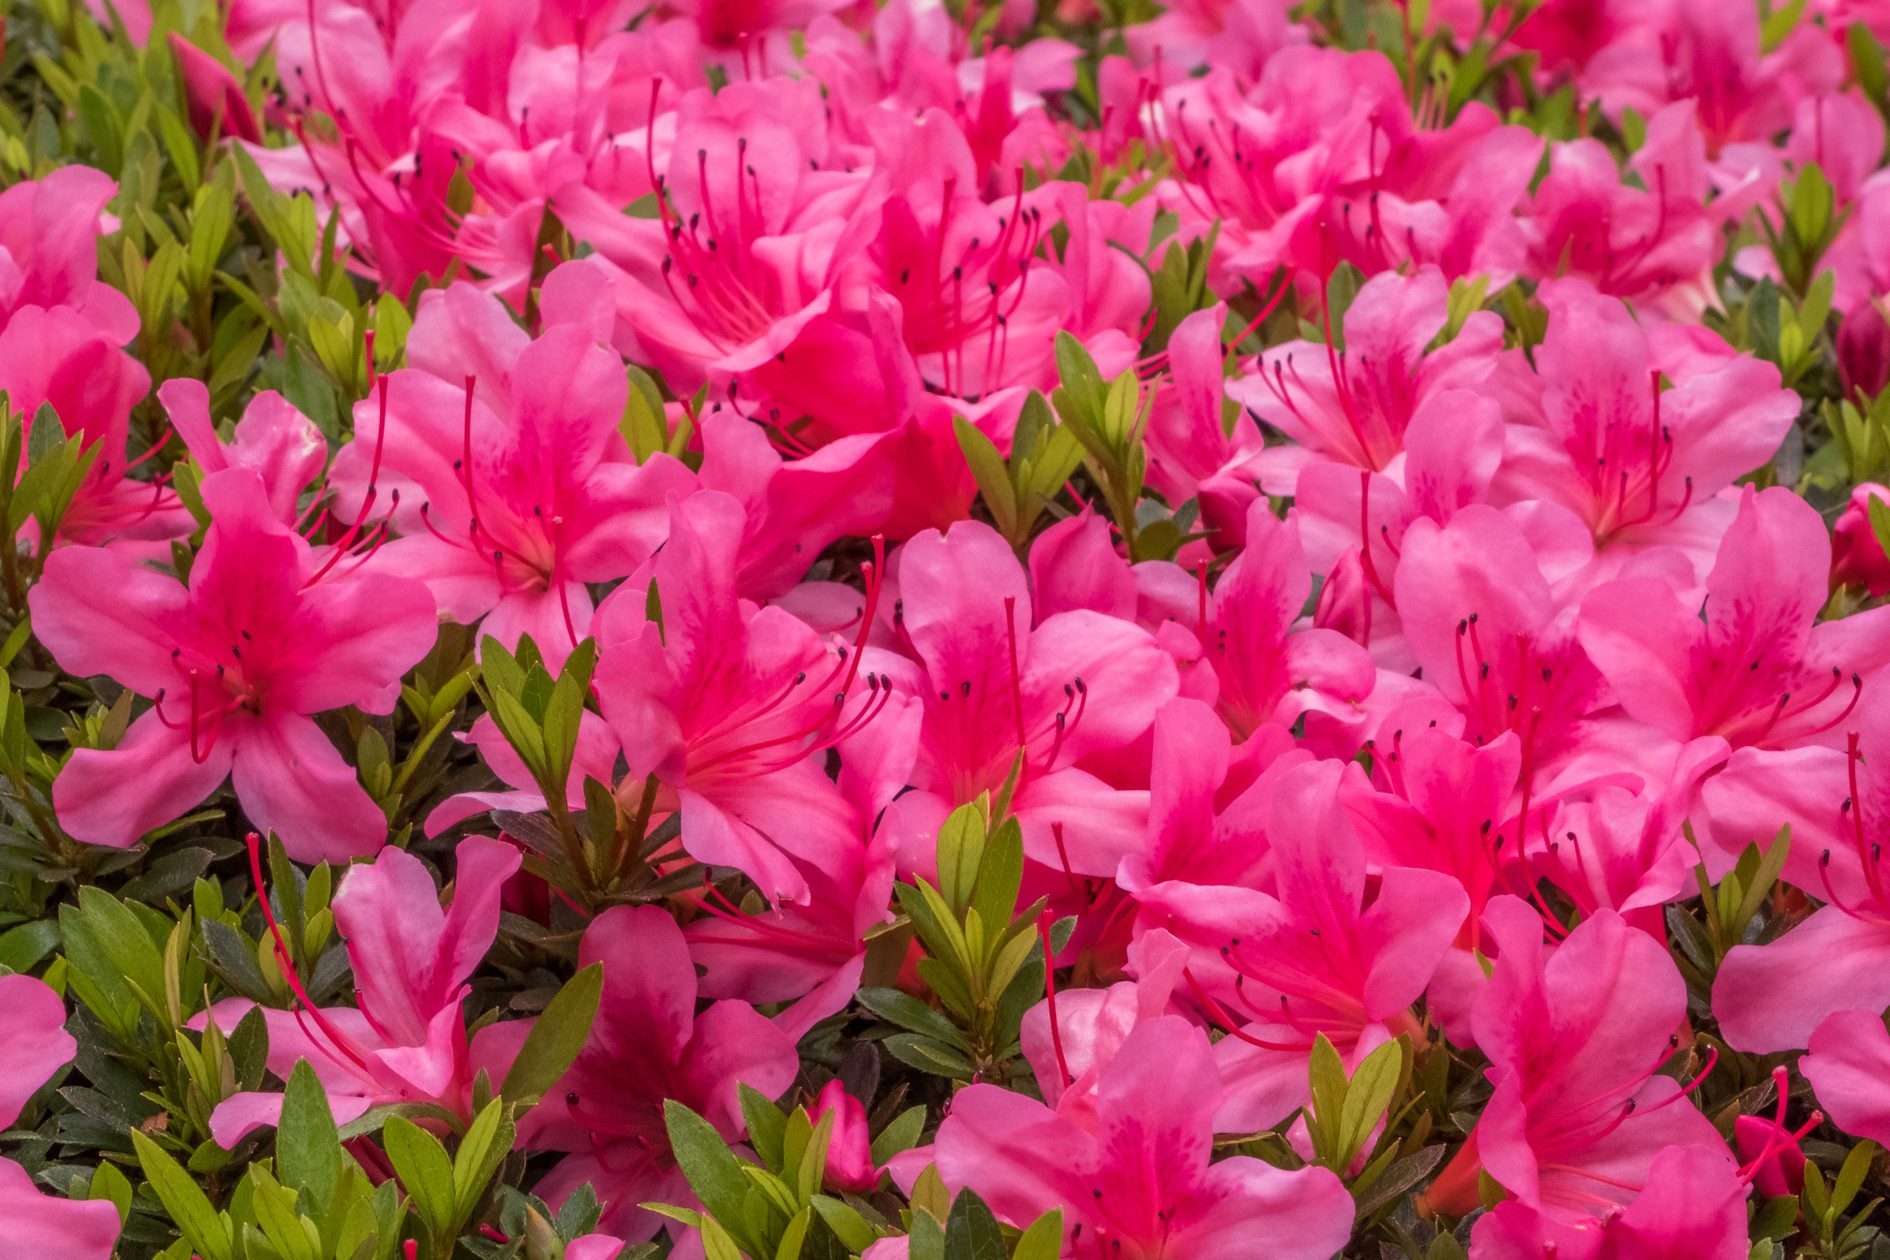 Full Frame Shot Of Pink Flowering Plants